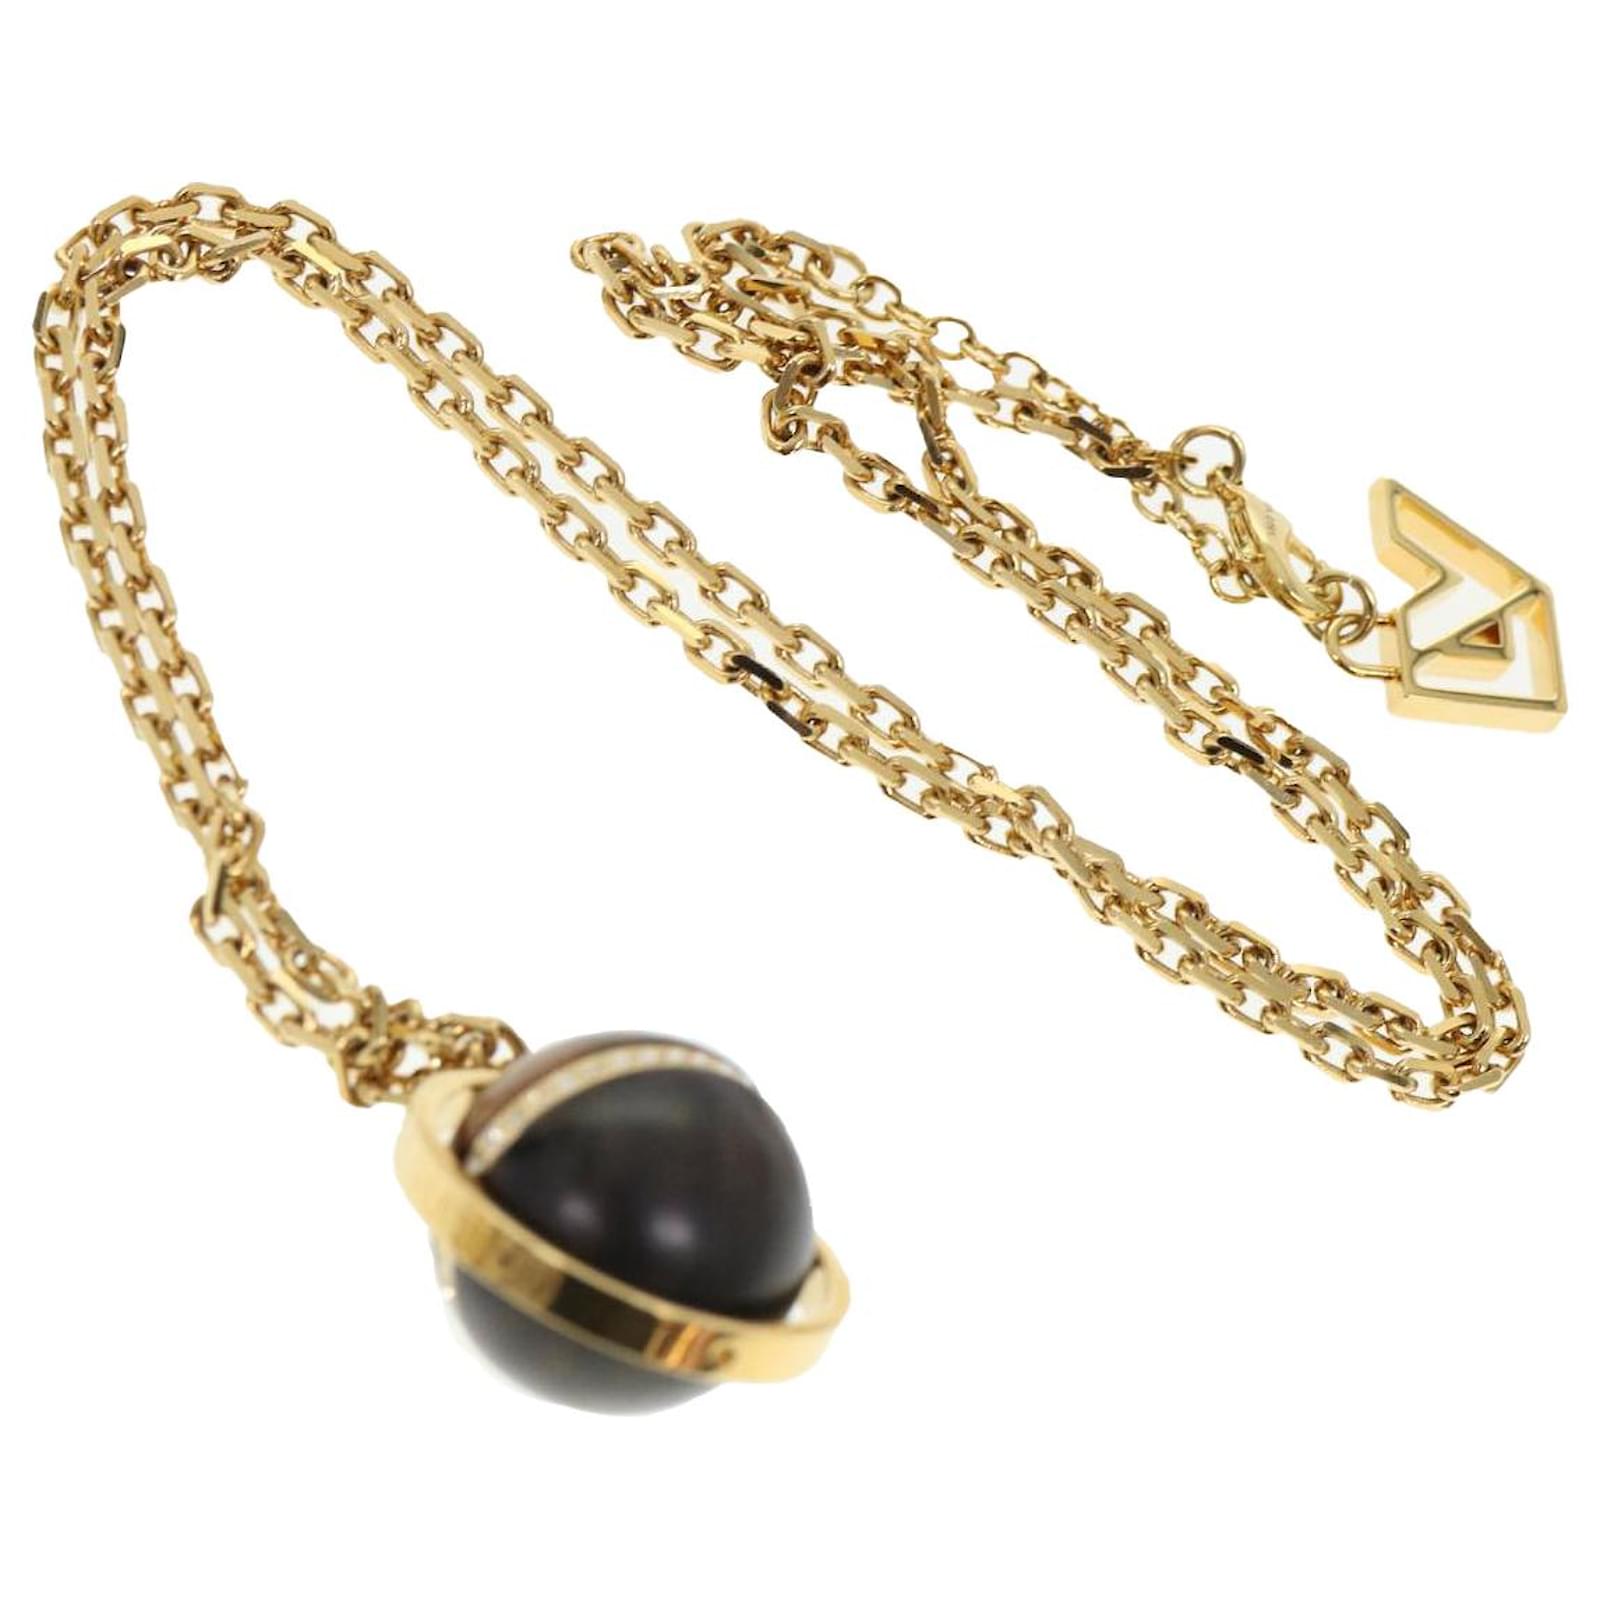 Louis Vuitton Lv Whistle Chain Pendant Necklace Silver